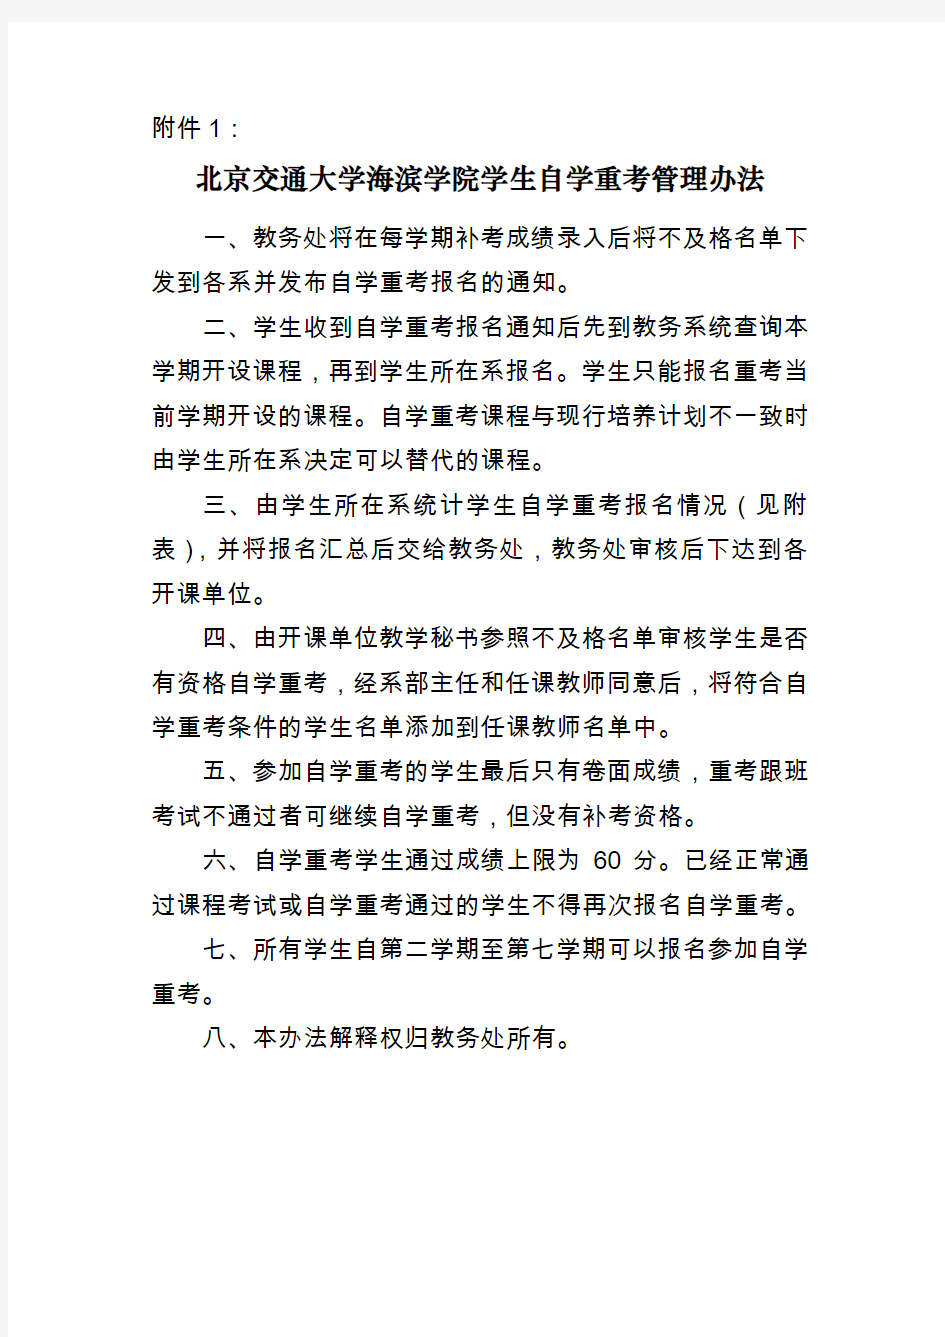 北京交通大学海滨学院学生自学重考管理办法